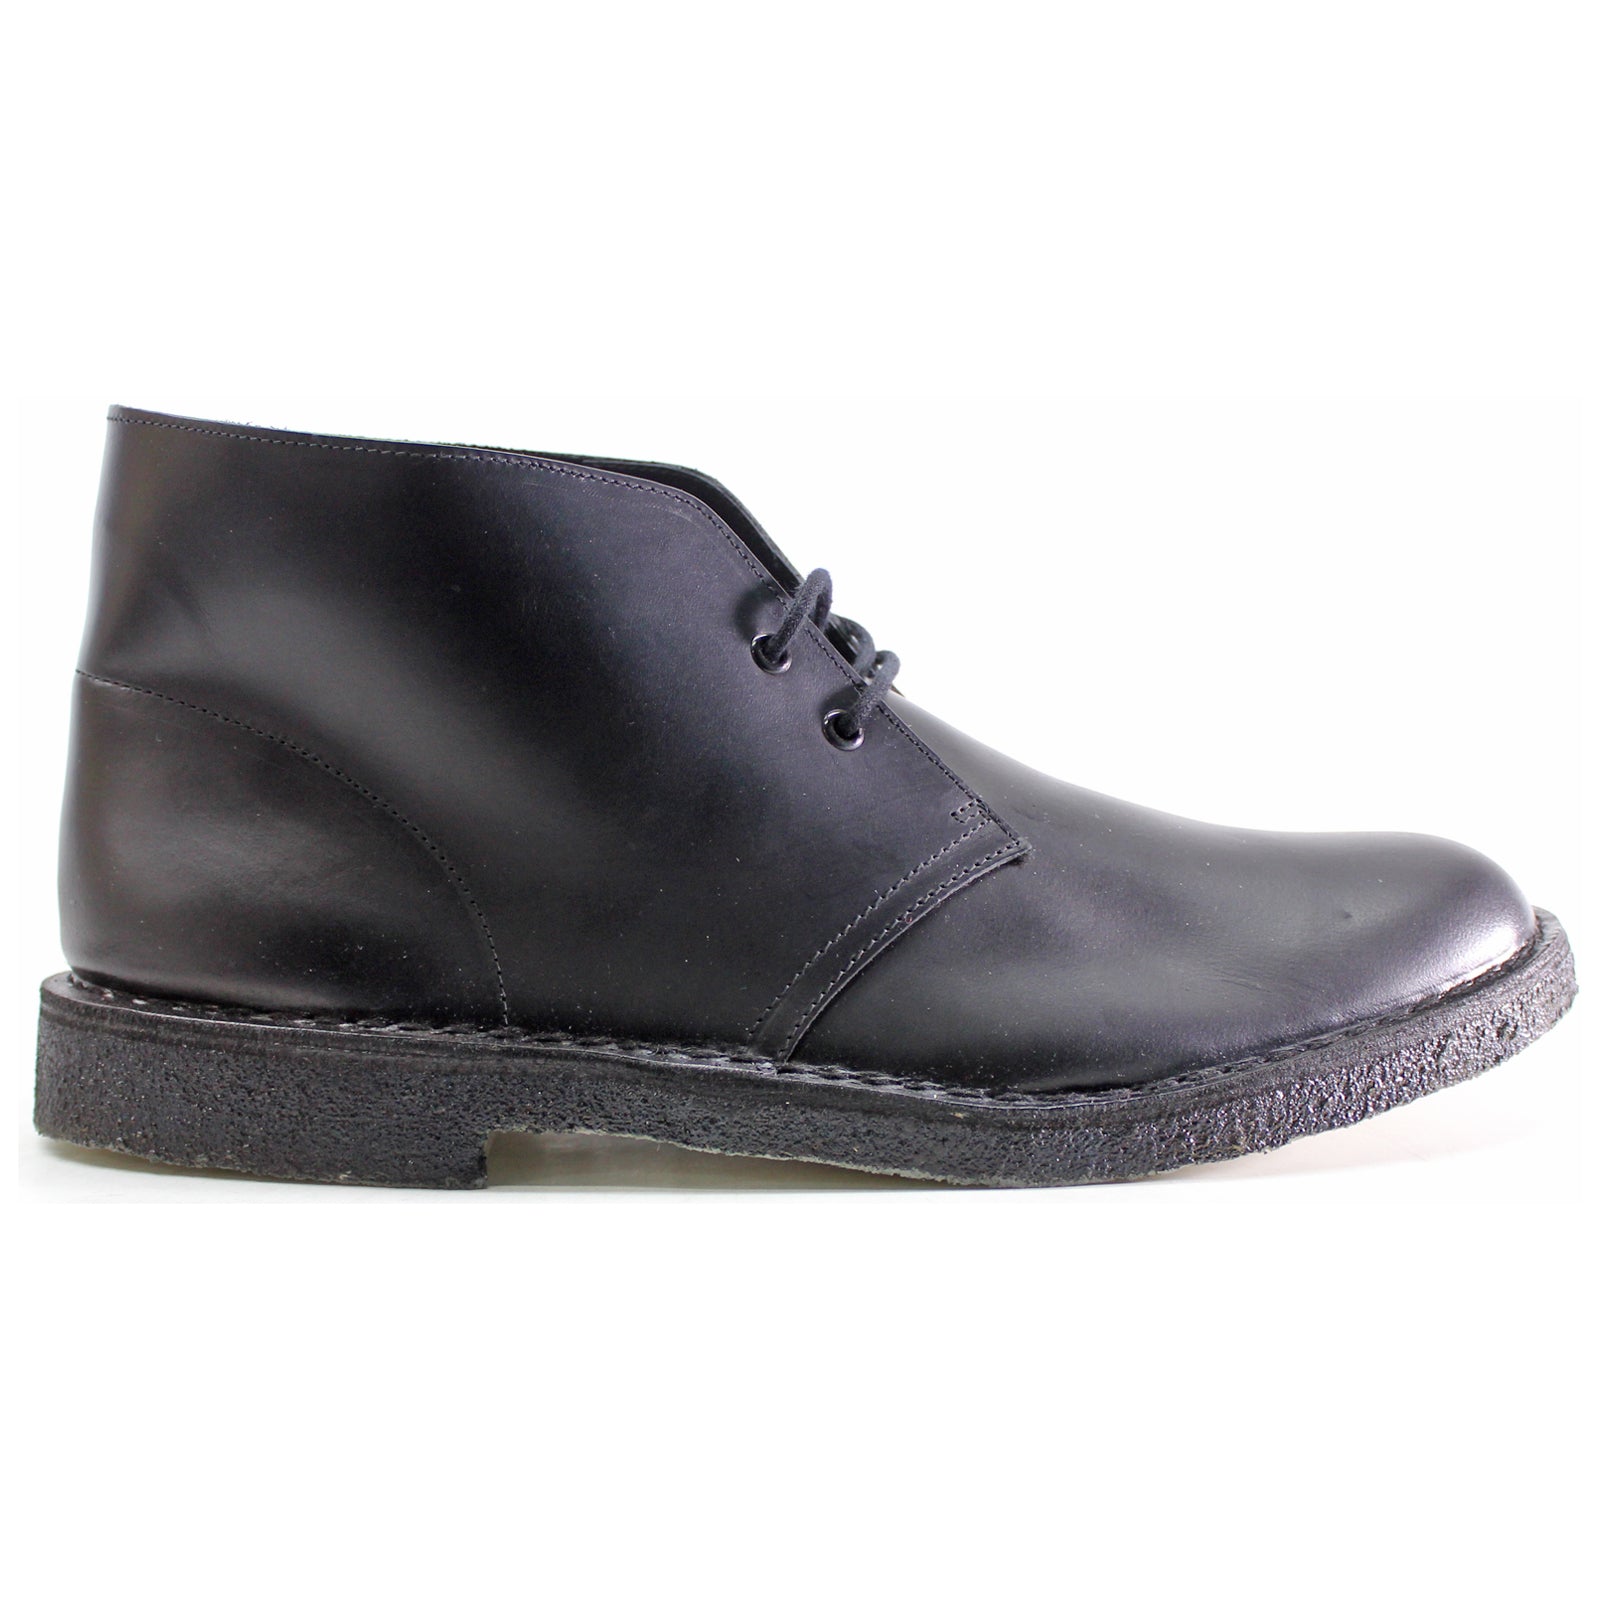 Clarks Originals Desert Boots Polished Leather Men's Boots#color_black black